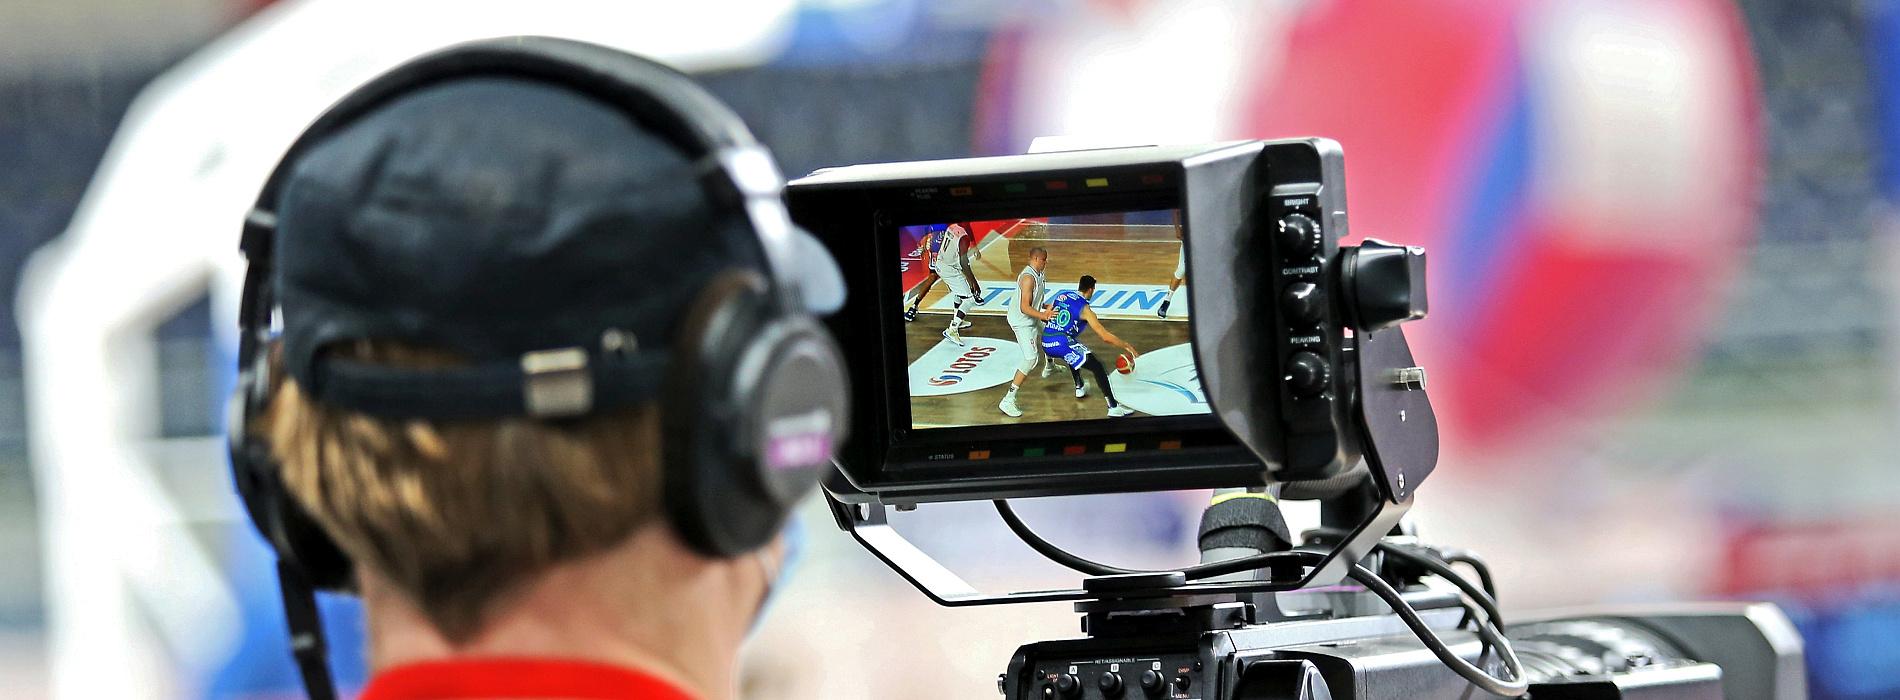 Pięć transmisji w sportowych stacjach Polsatu